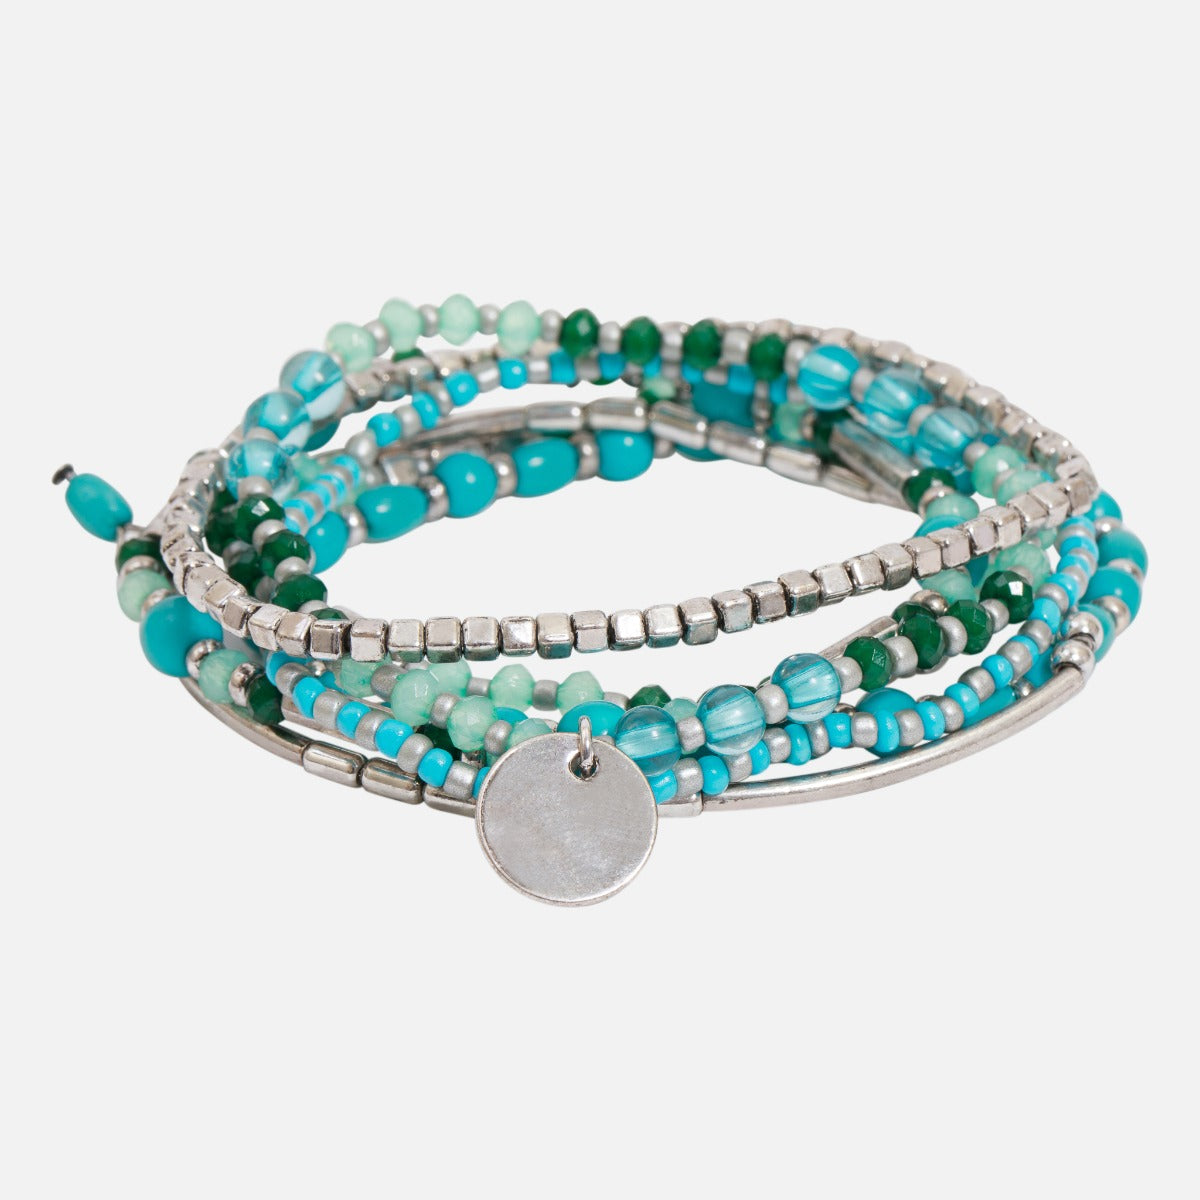 Set of seven blue and grey elastic bracelets